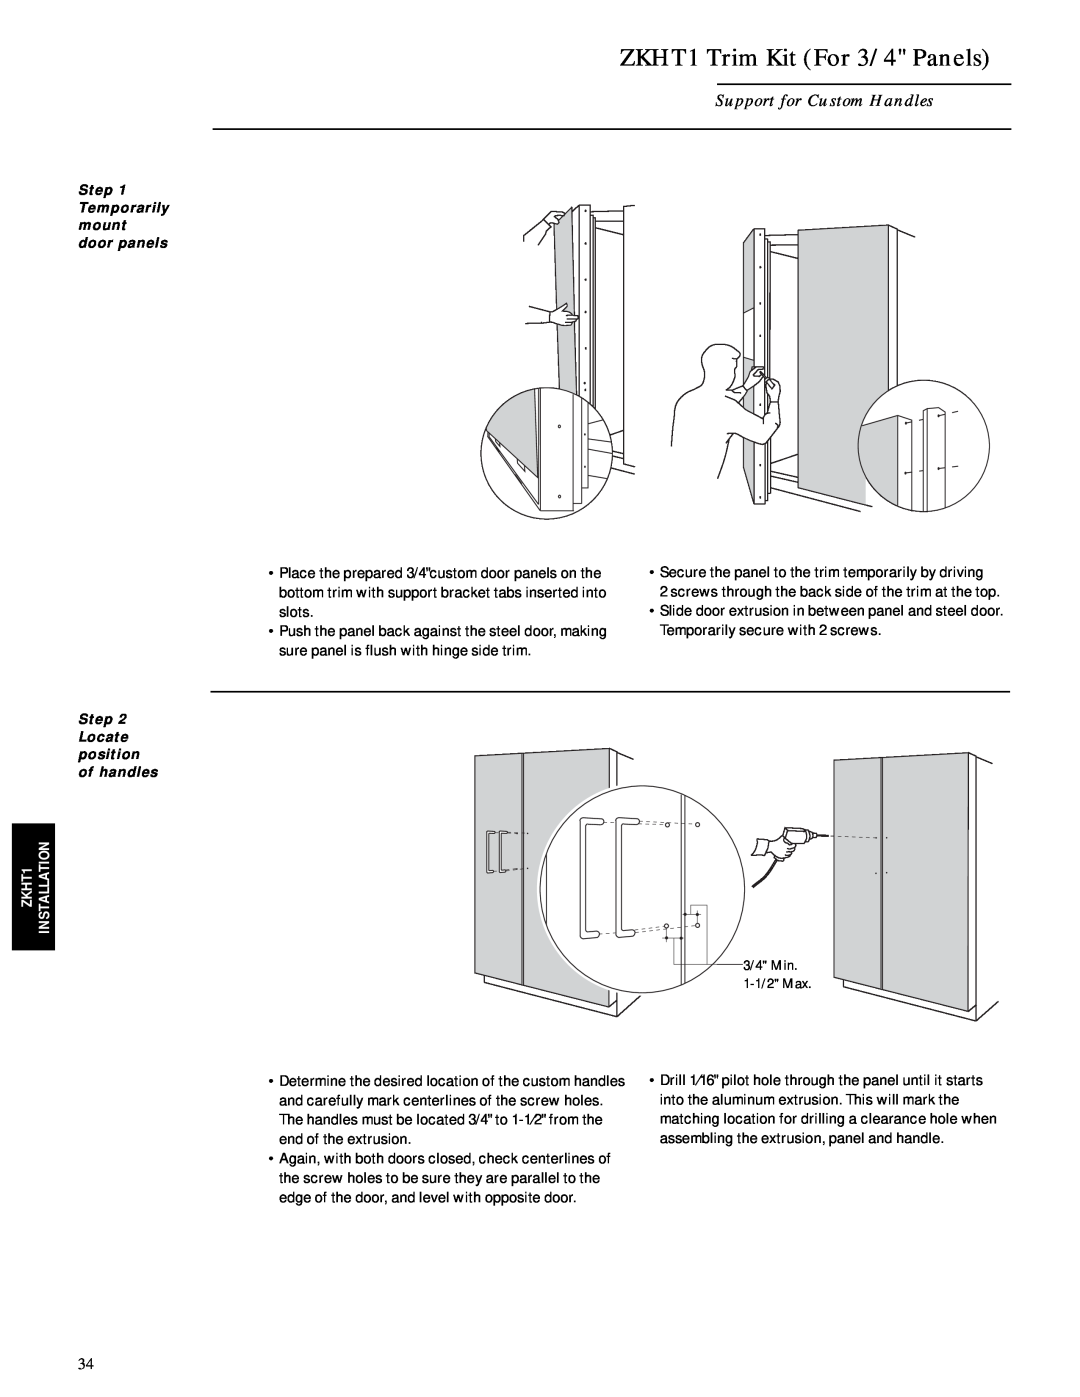 GE Monogram ZISB42D, ZIS42N ZKHT1 Trim Kit For 3/4 Panels, Support for Custom Handles, Step Temporarily mount door panels 